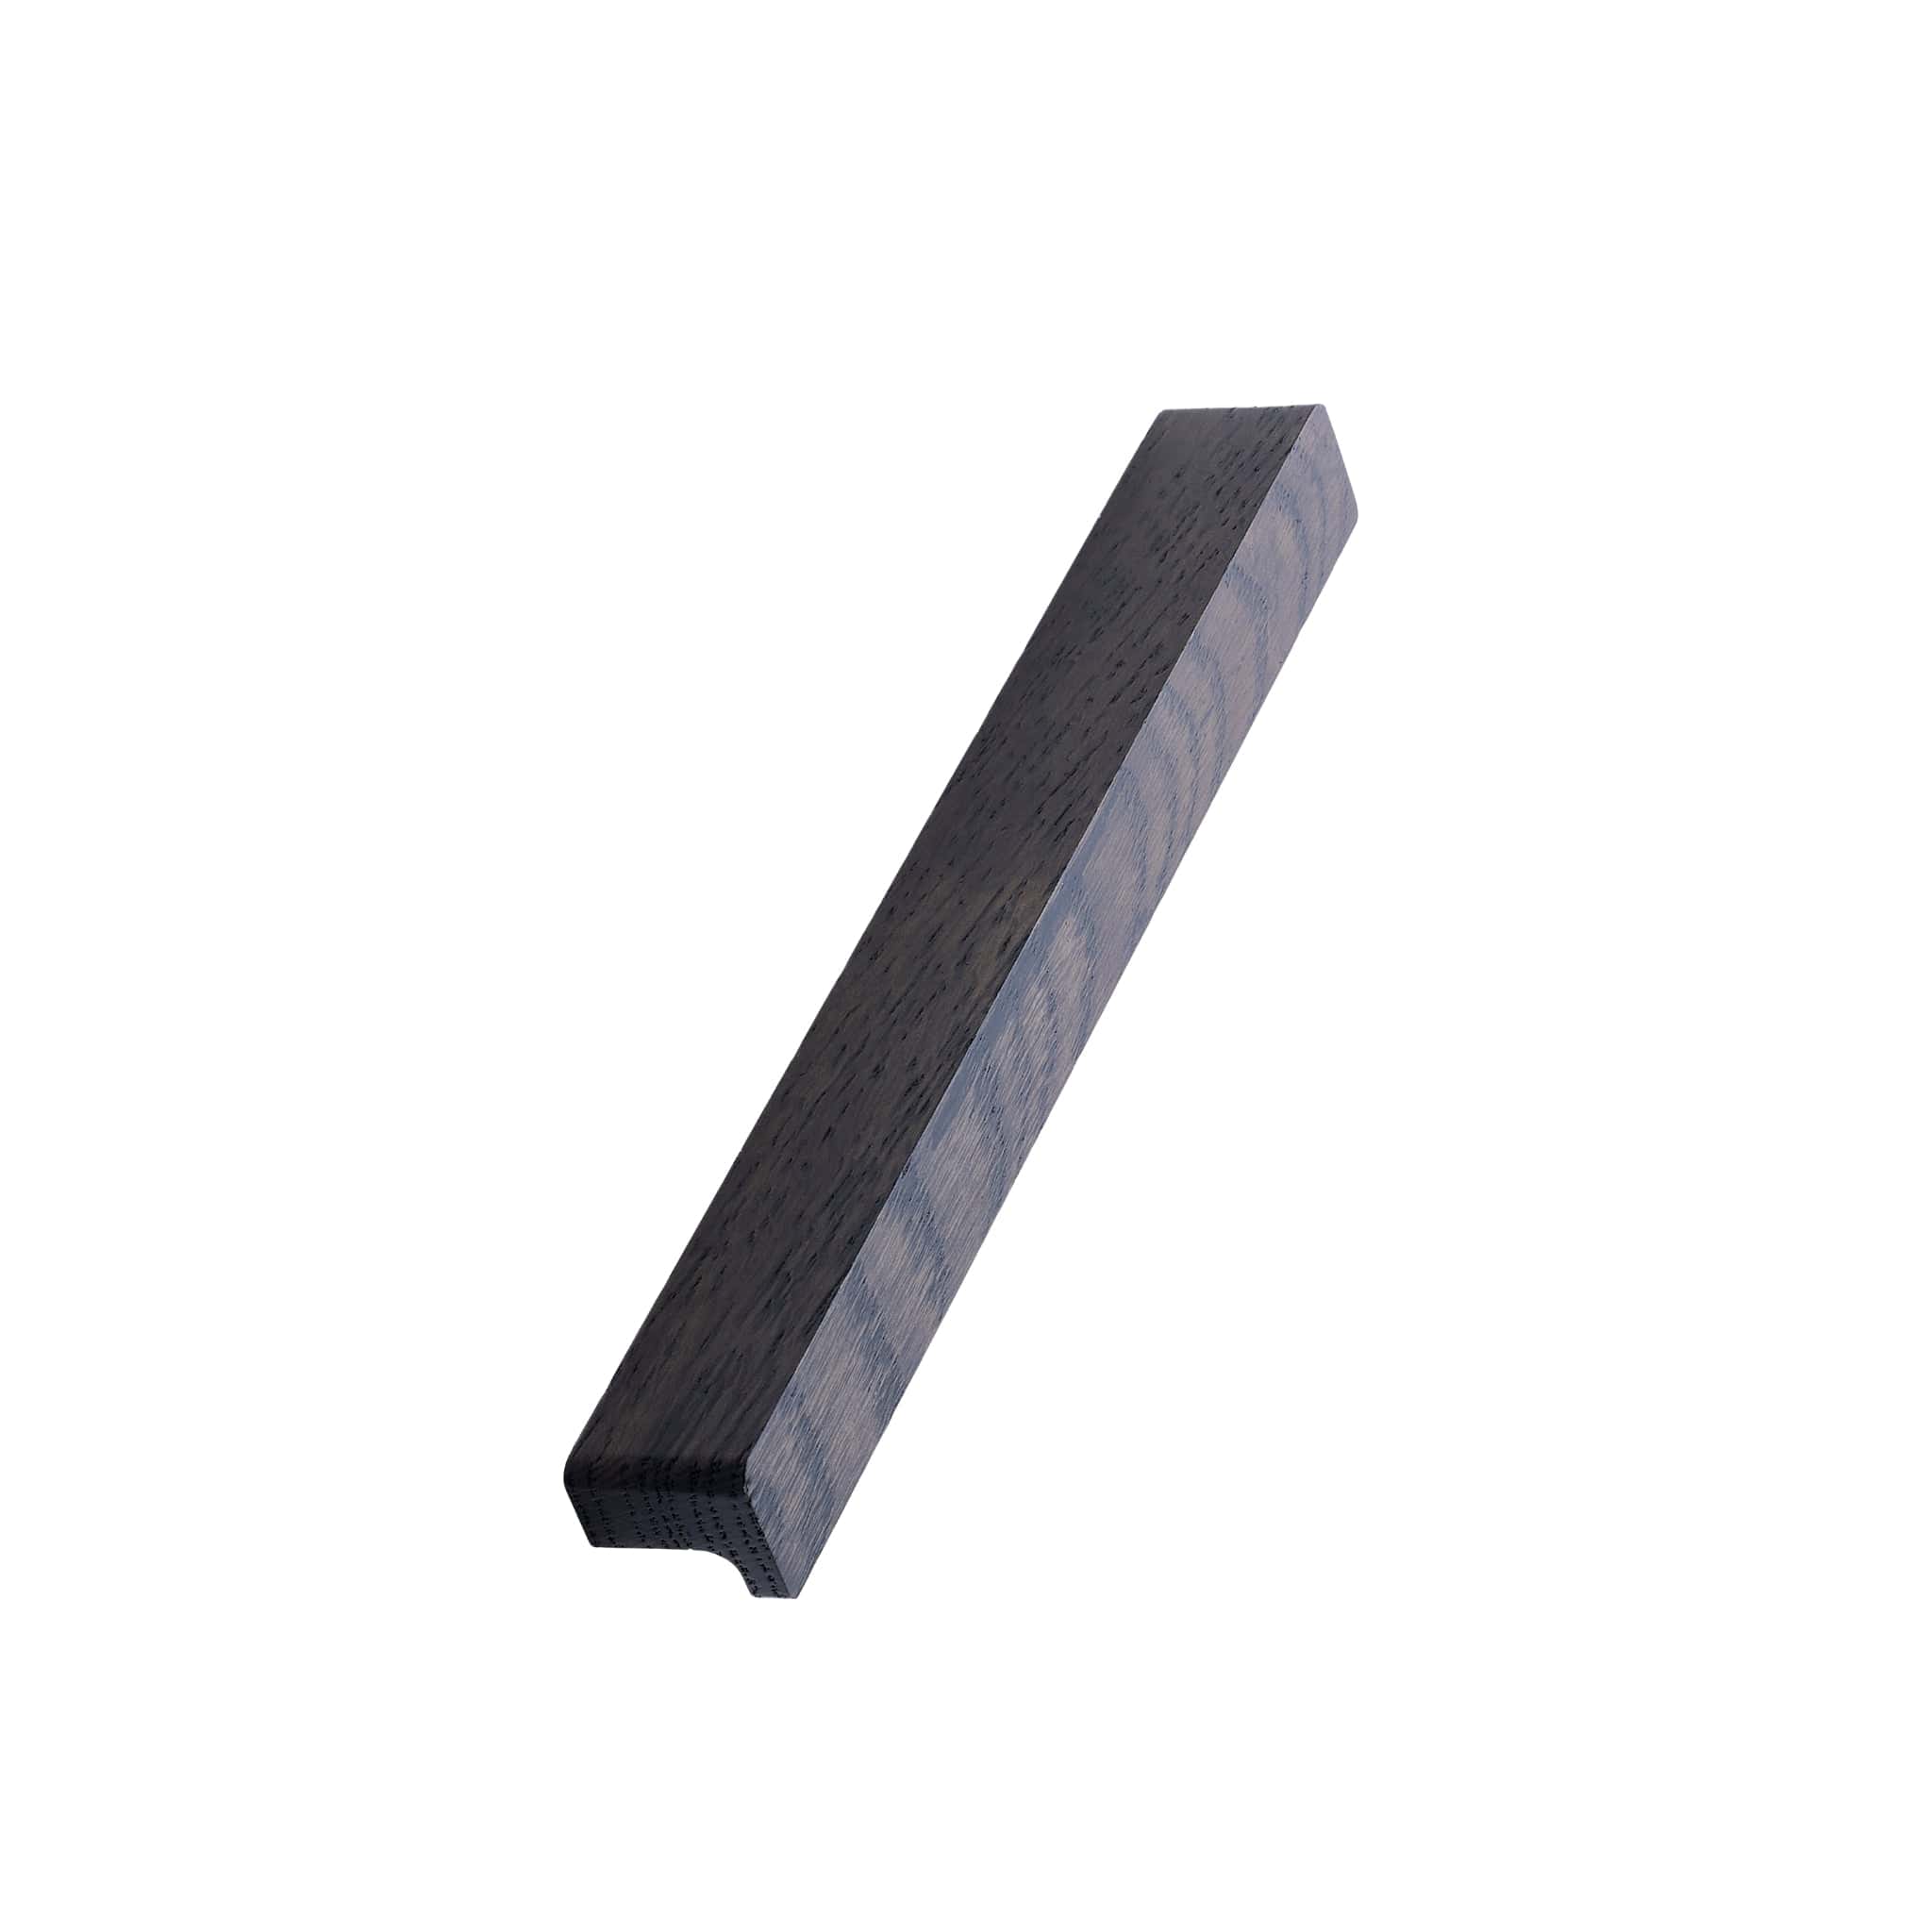 Elan | Greb i Mørkebrun Eg L 200 mm (C/C 160 mm) Furnipart FP-104420160-056 FINICC